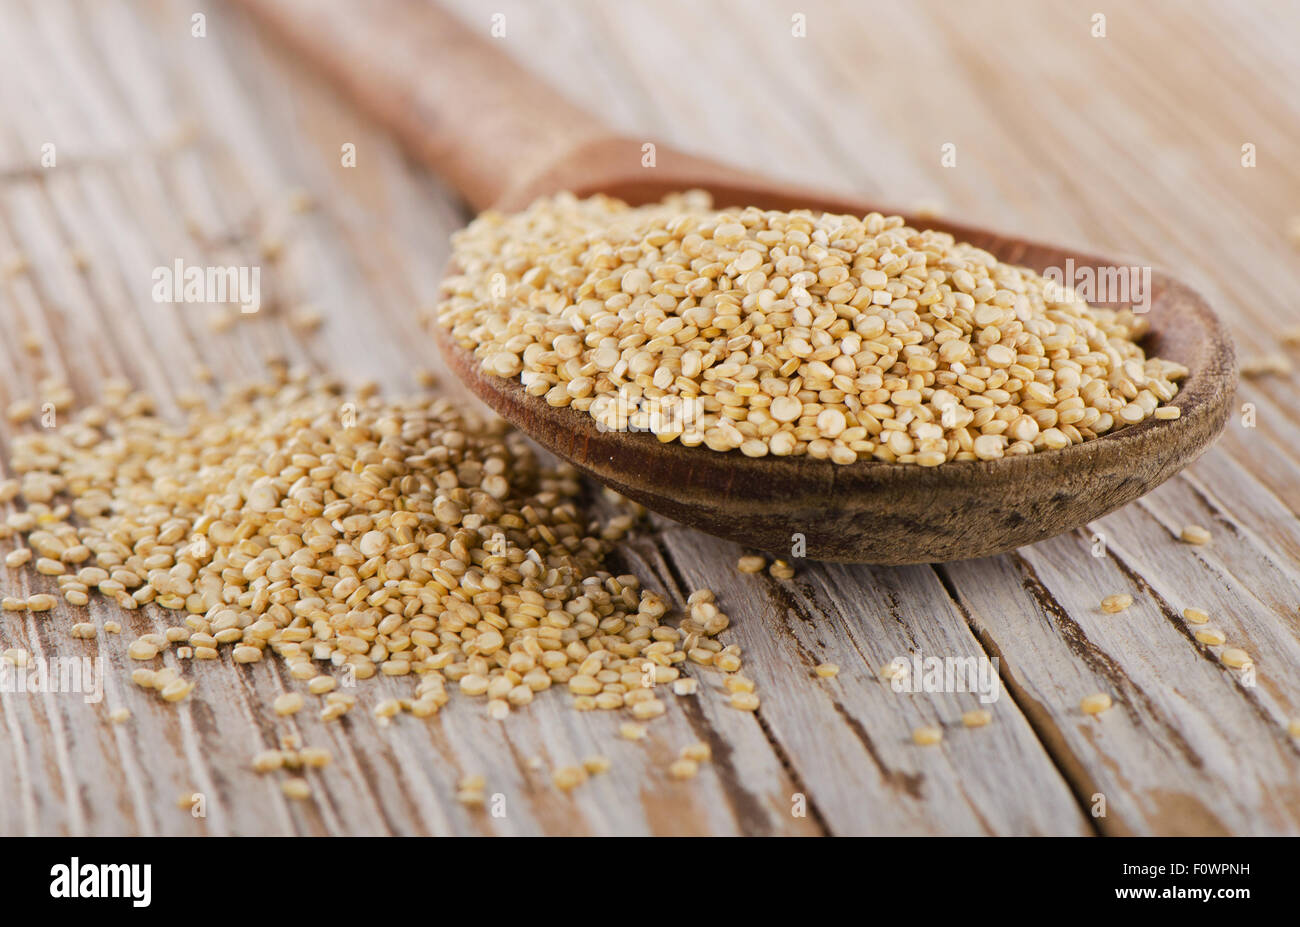 Les graines de quinoa gros plan sur un fond de bois rustique. Selective focus Banque D'Images